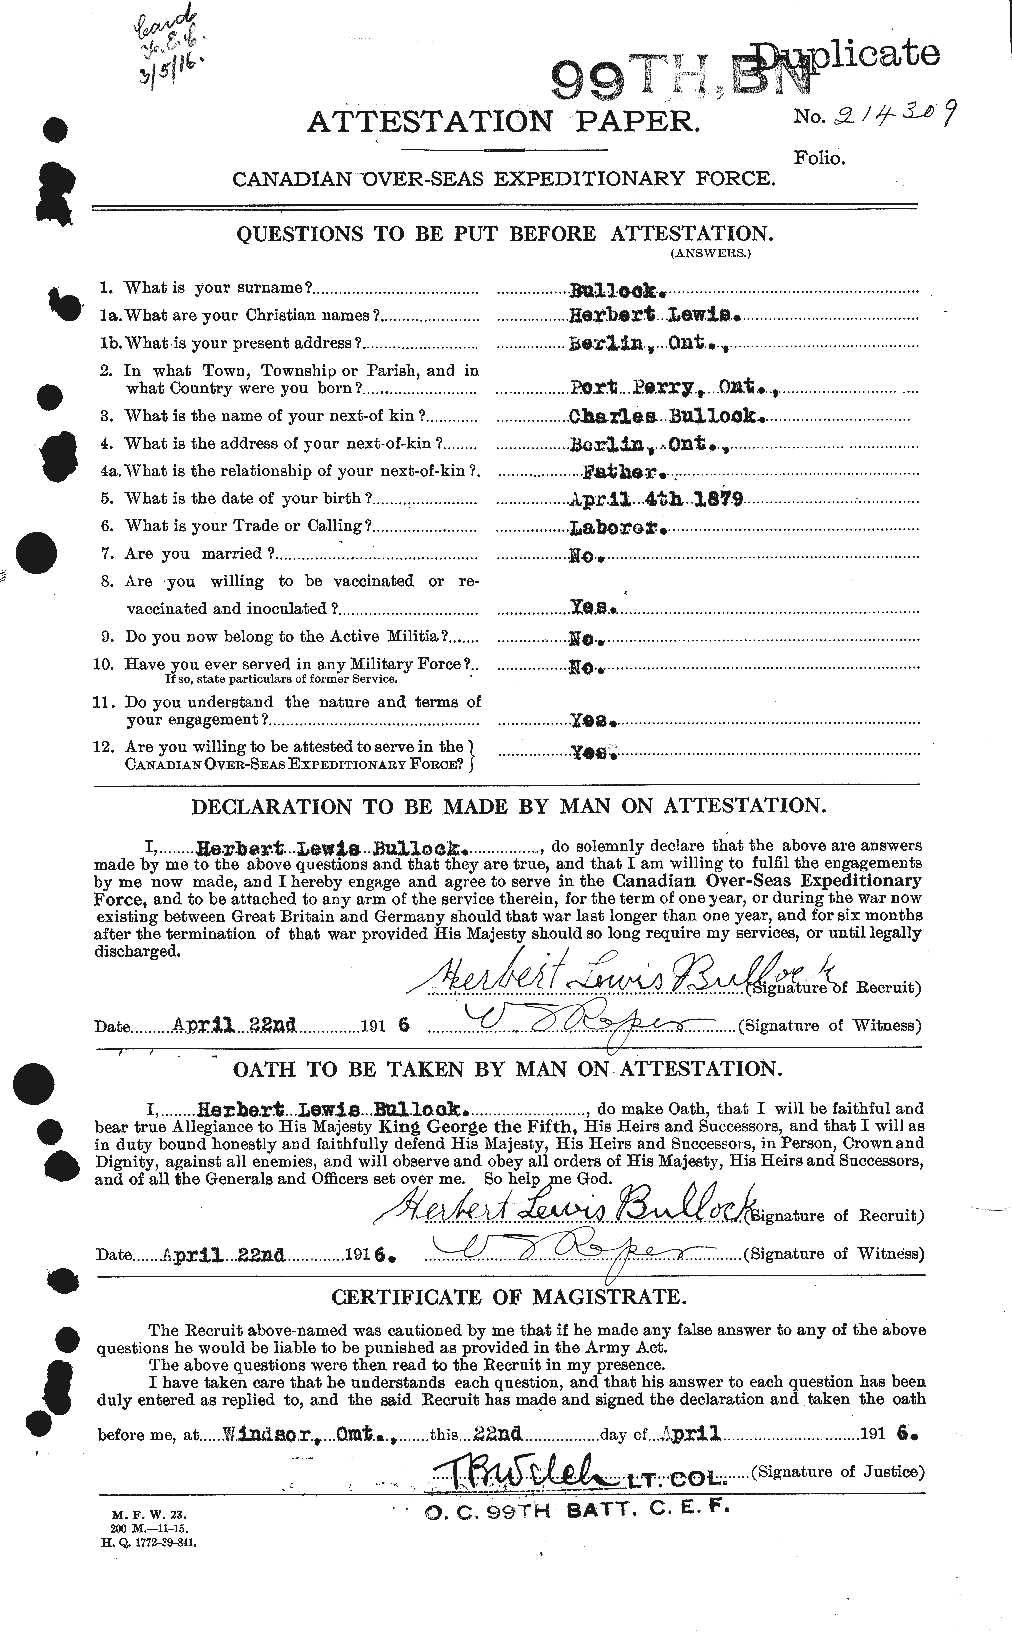 Dossiers du Personnel de la Première Guerre mondiale - CEC 269717a